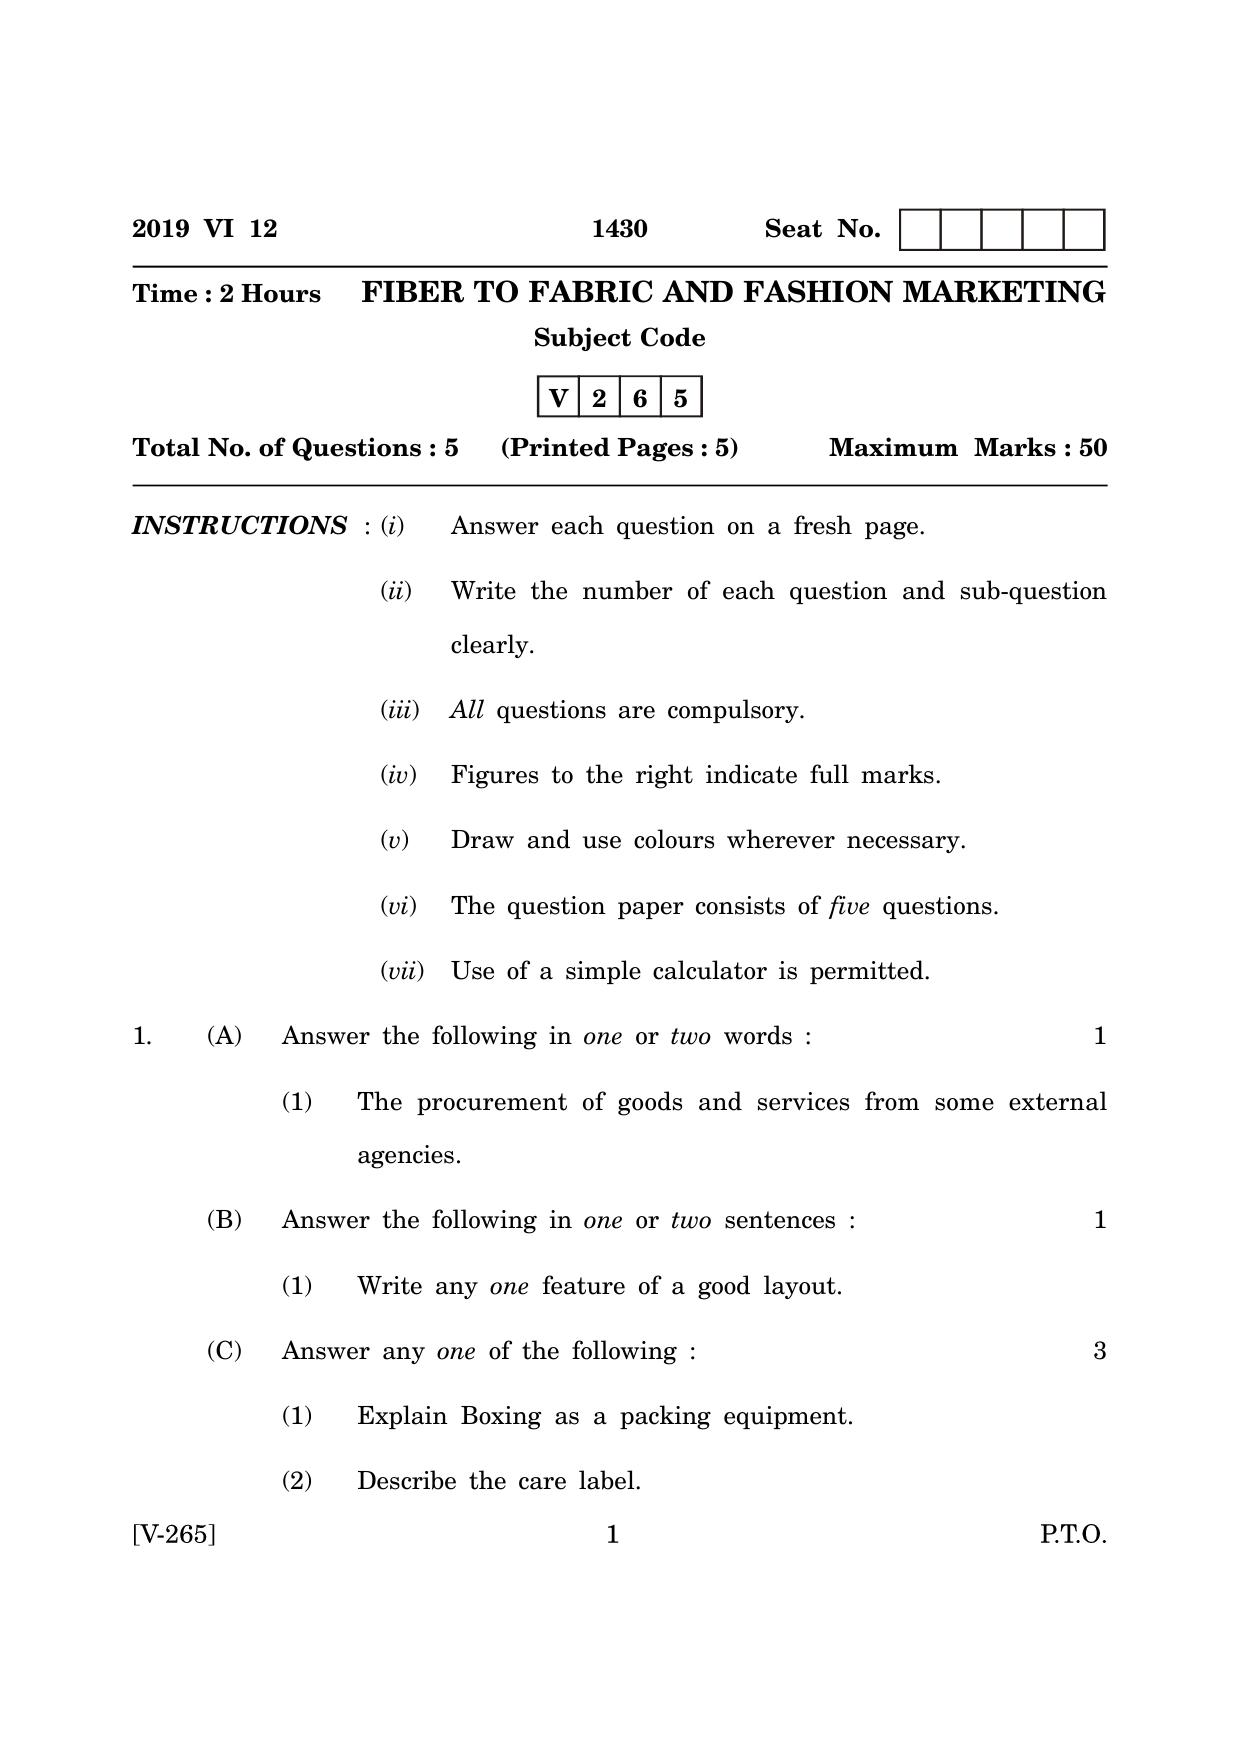 Goa Board Class 12 Fibre to Fabric & Fashion Marketing  June 2019 (June 2019) Question Paper - Page 1